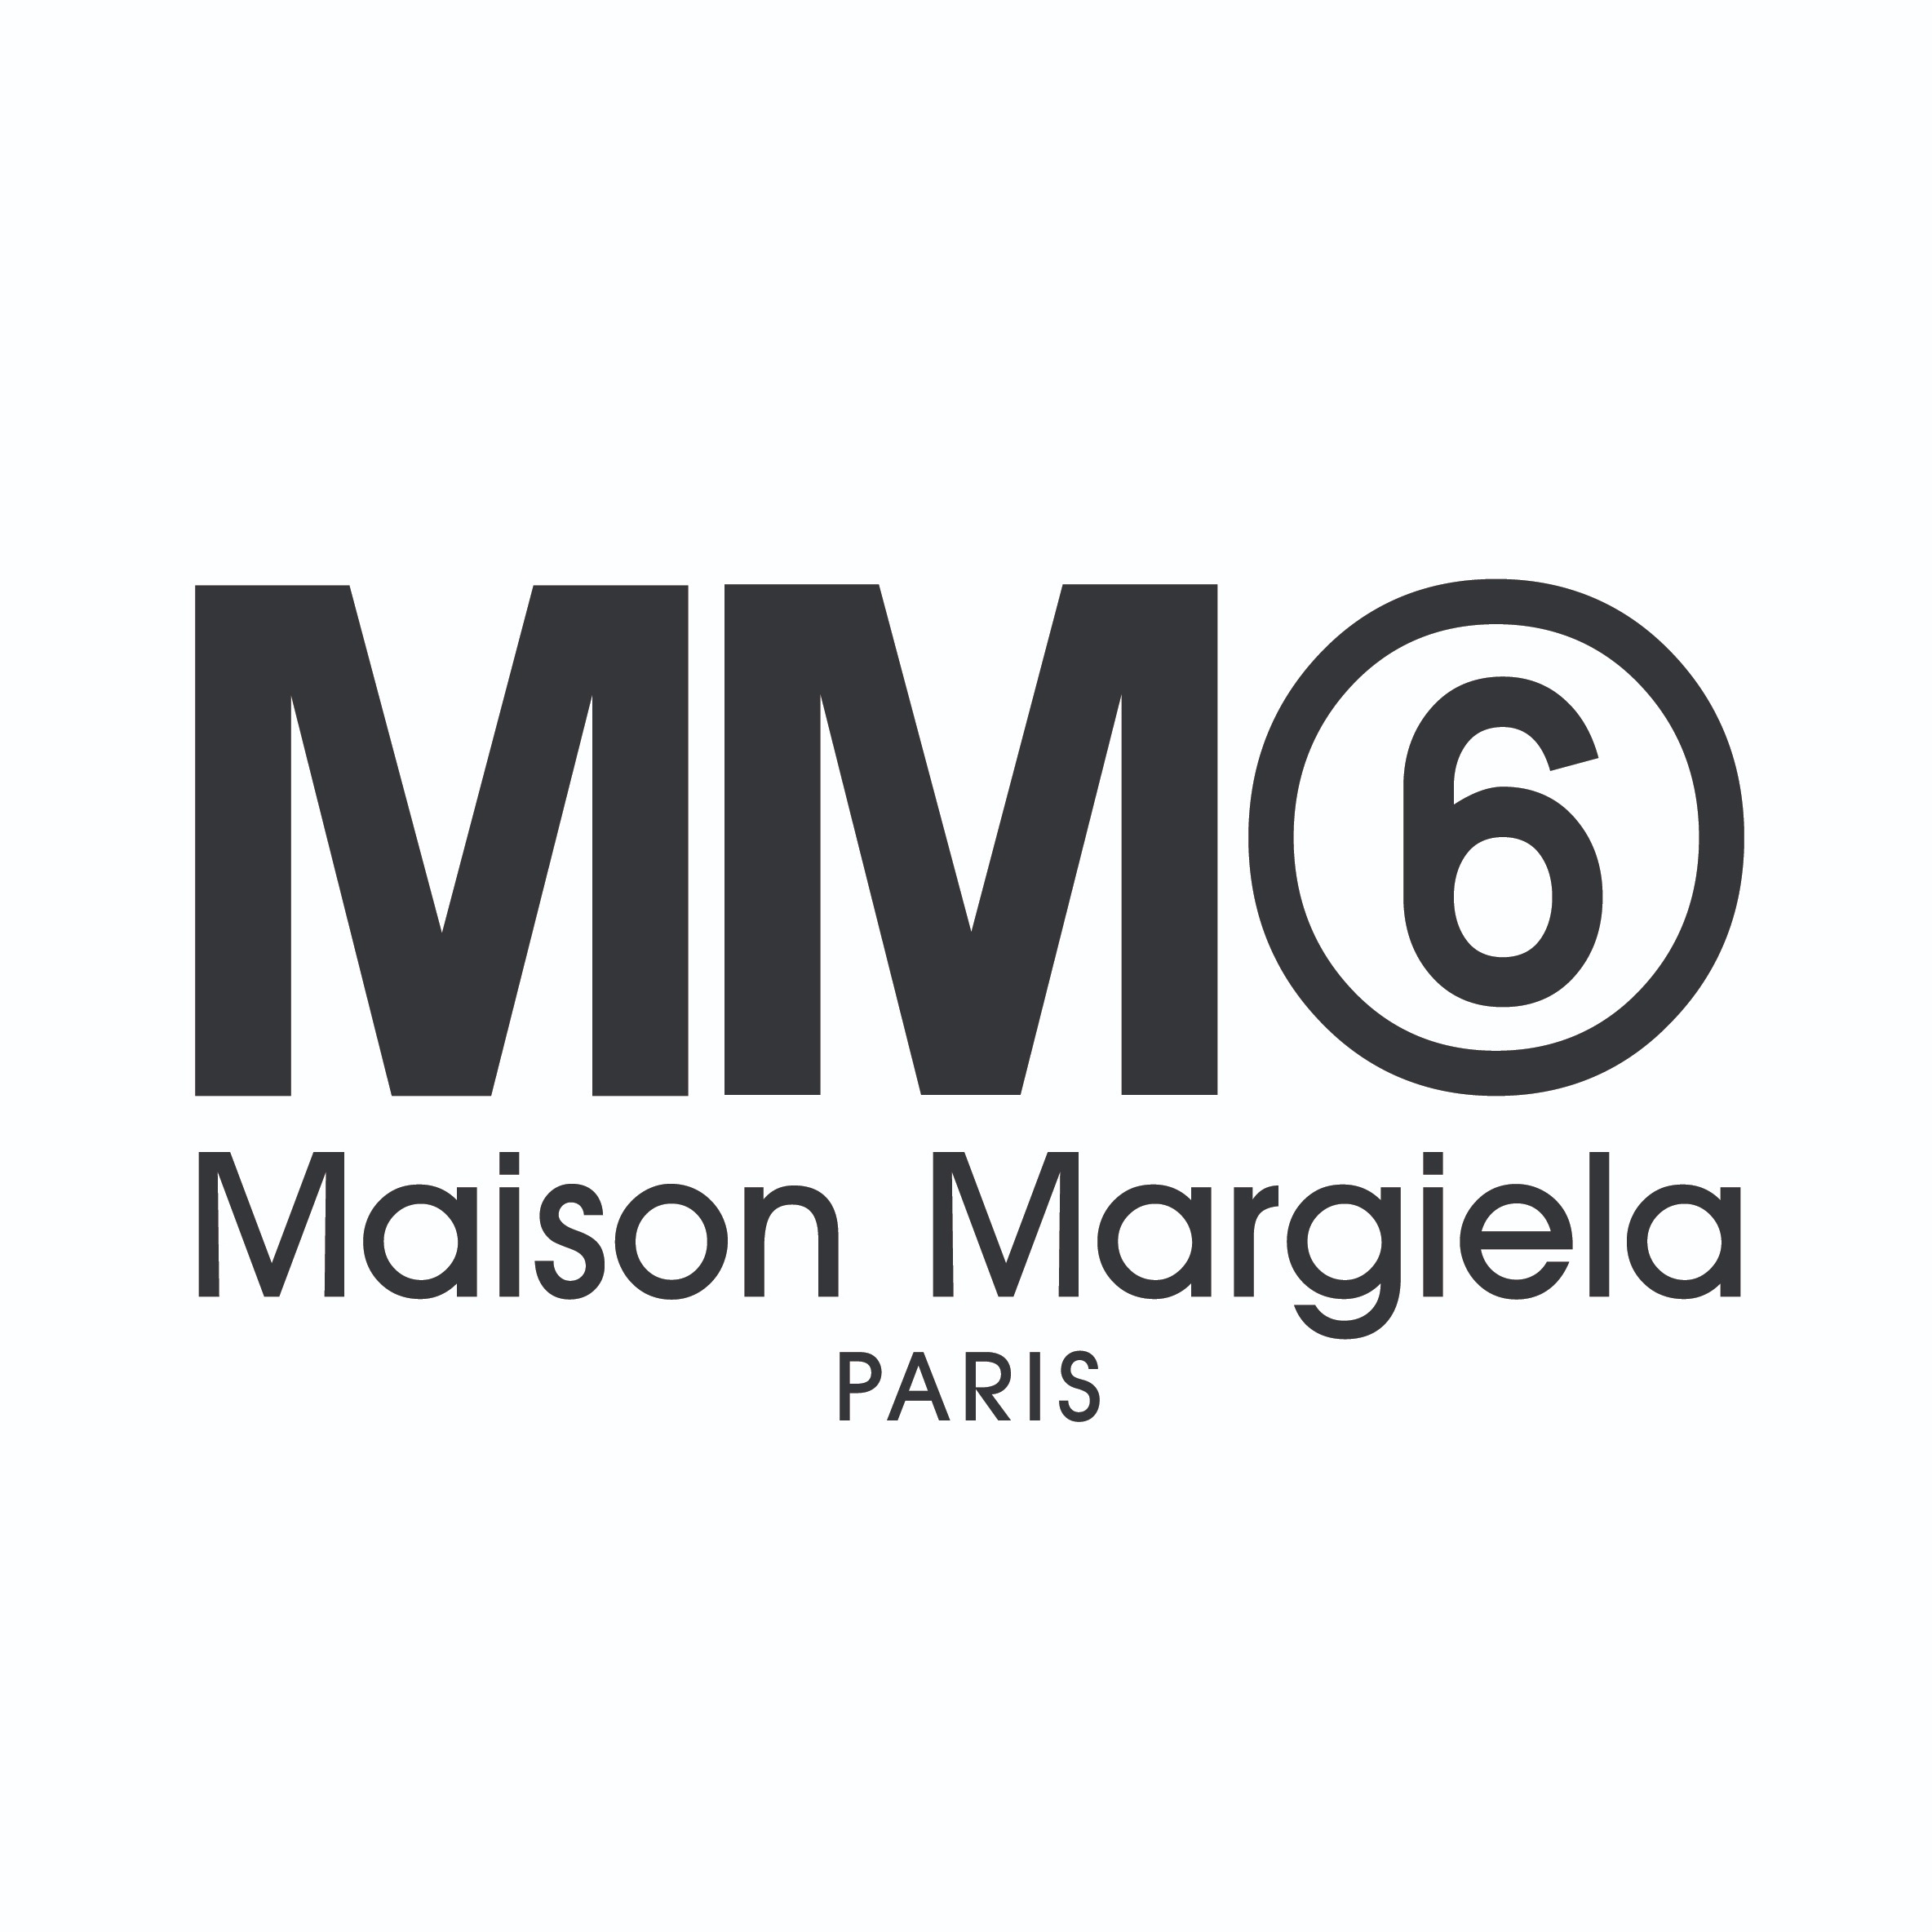 MM6 Maison Margiela Osaka Takashimaya Logo